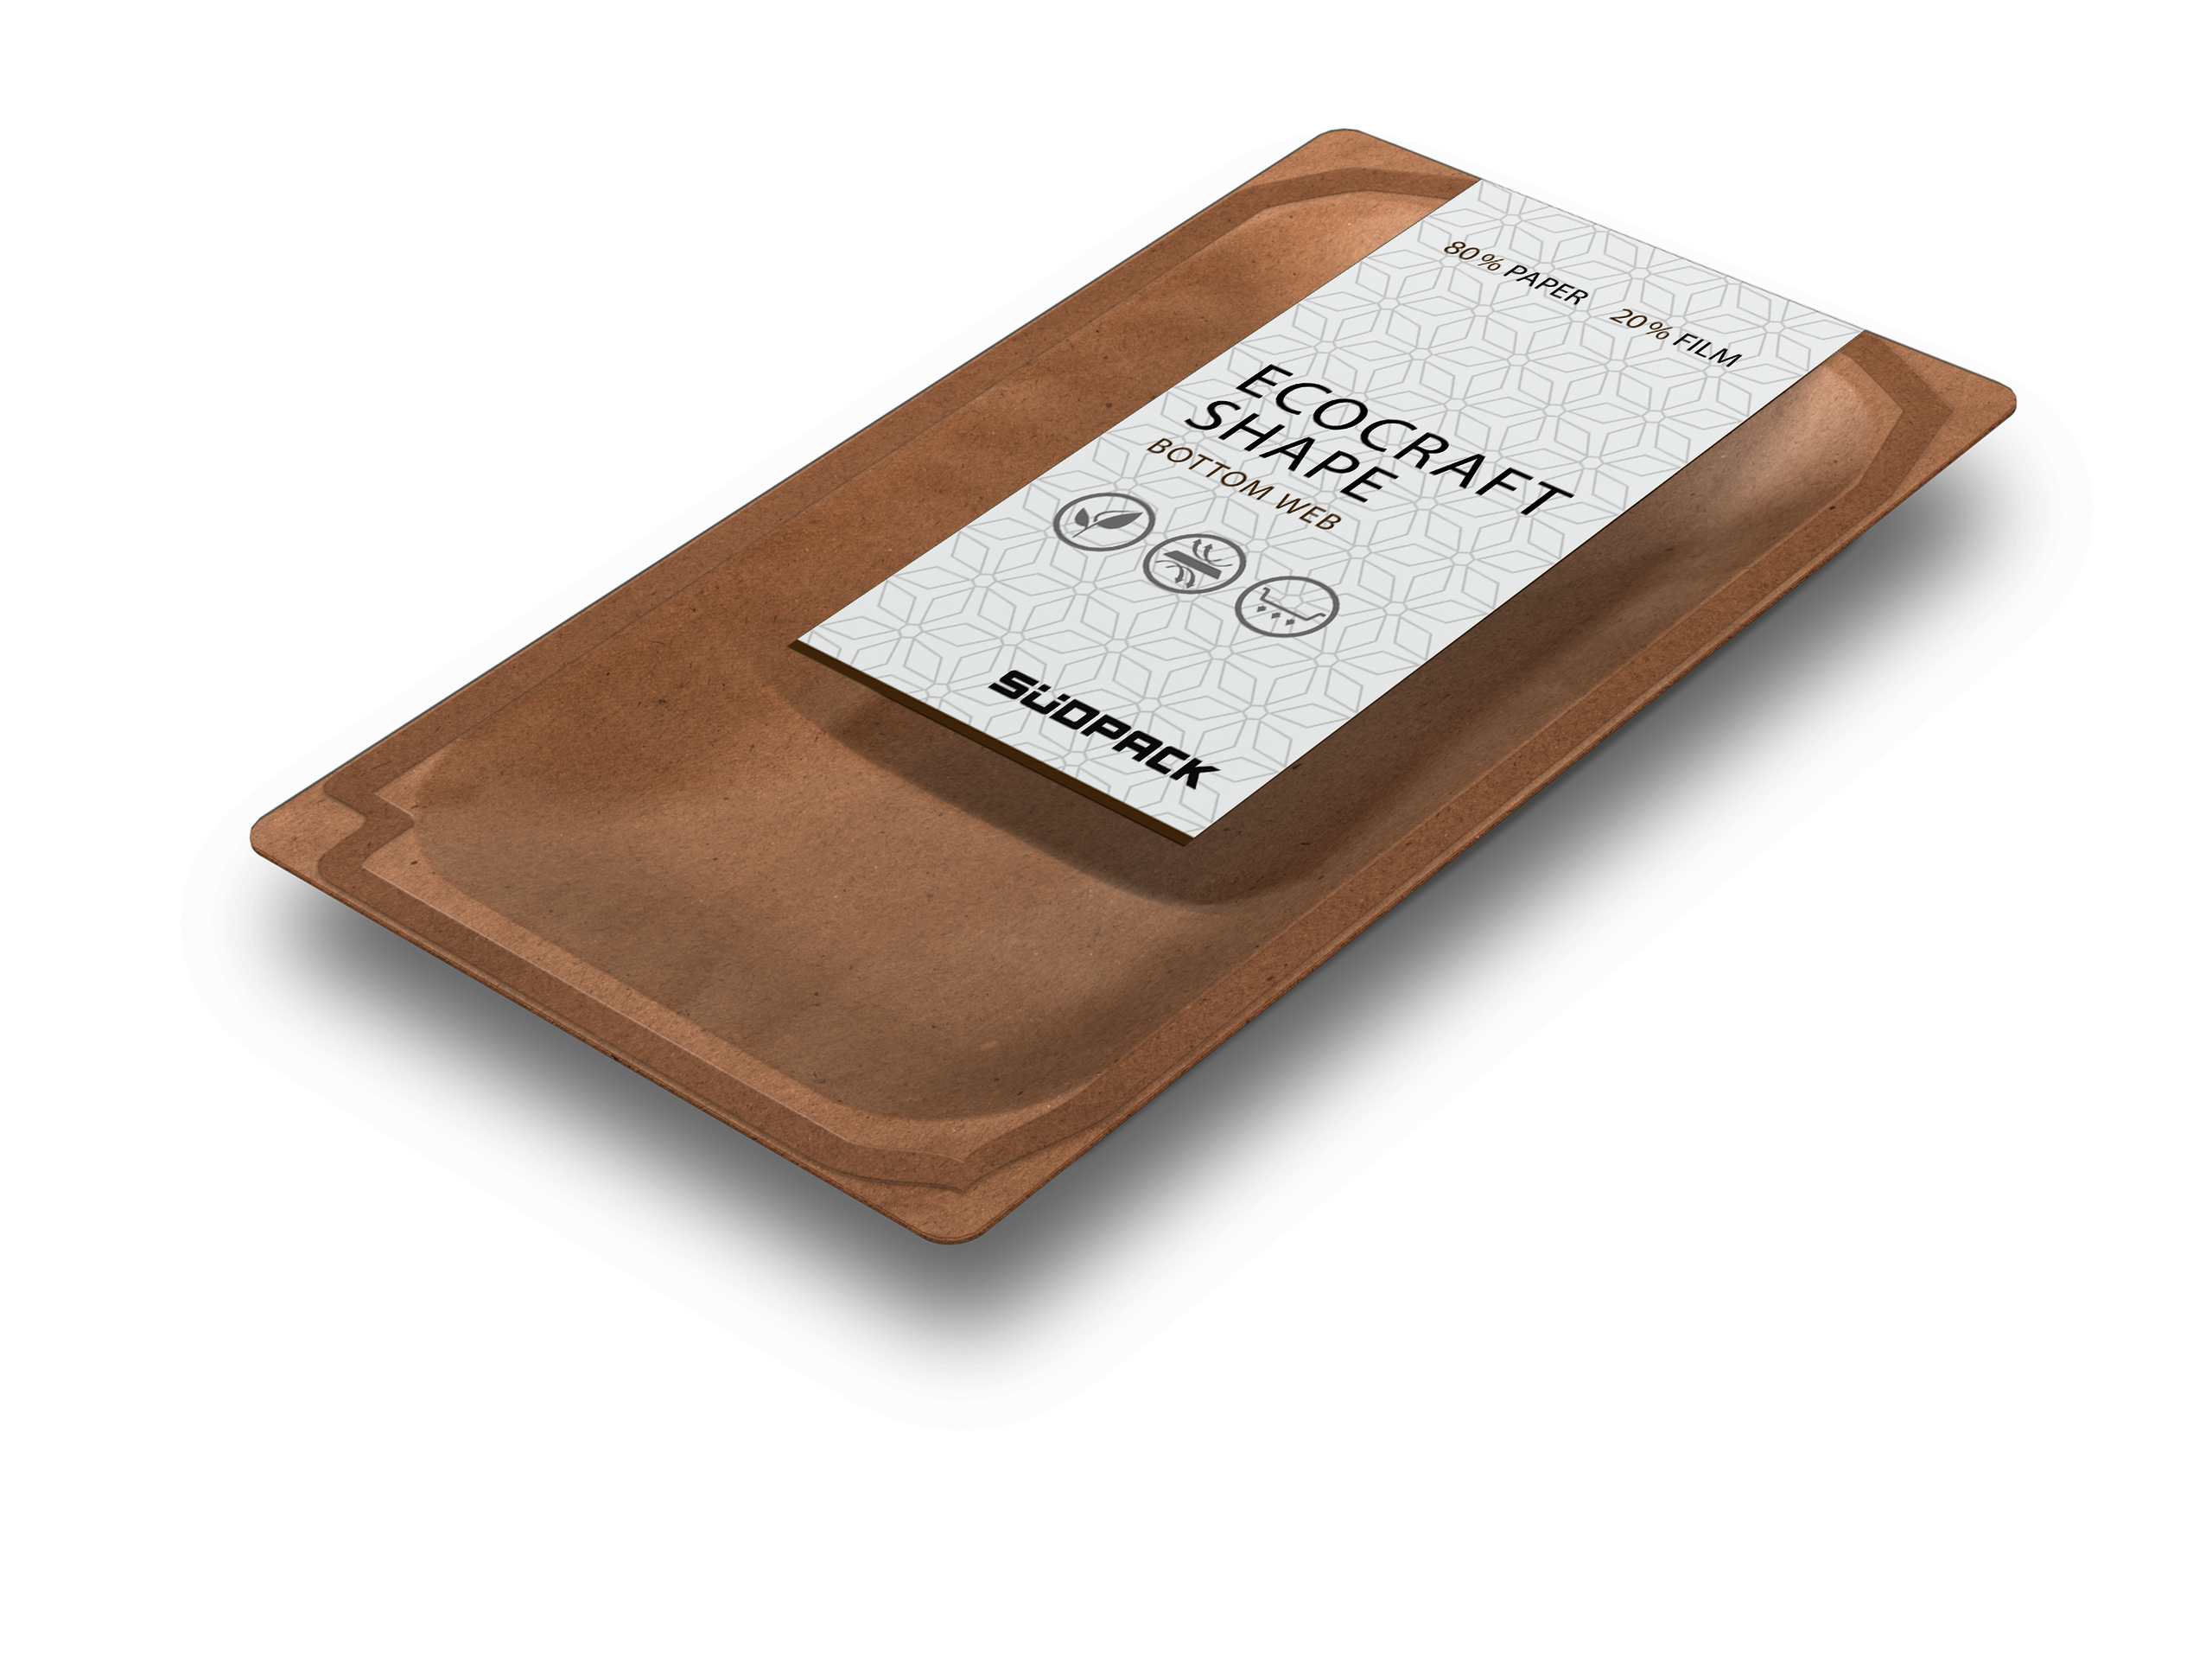 Packshot der Ecocraft Shape von SÜDPACK - Papierfaserbasierte Unterbahn für Skinverpackungen aus nachwachsenden Ressourcen